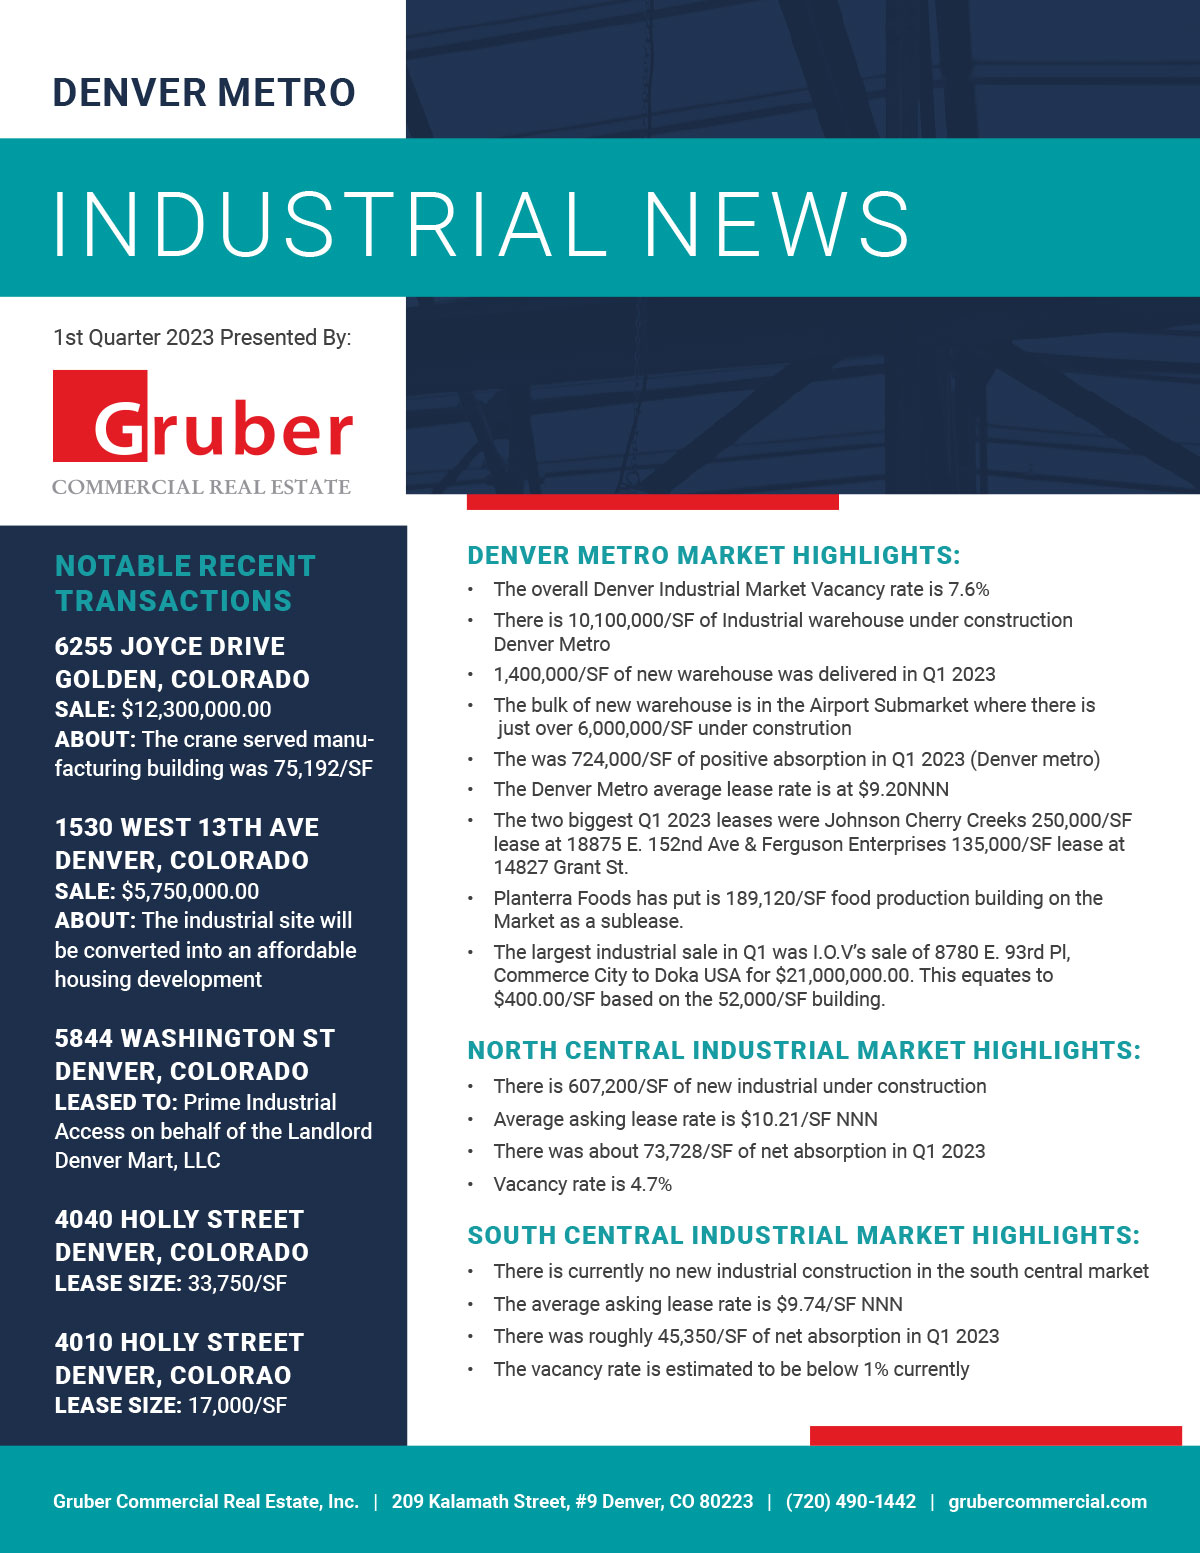 Gruber Newsletter: 1st Quarter 2023